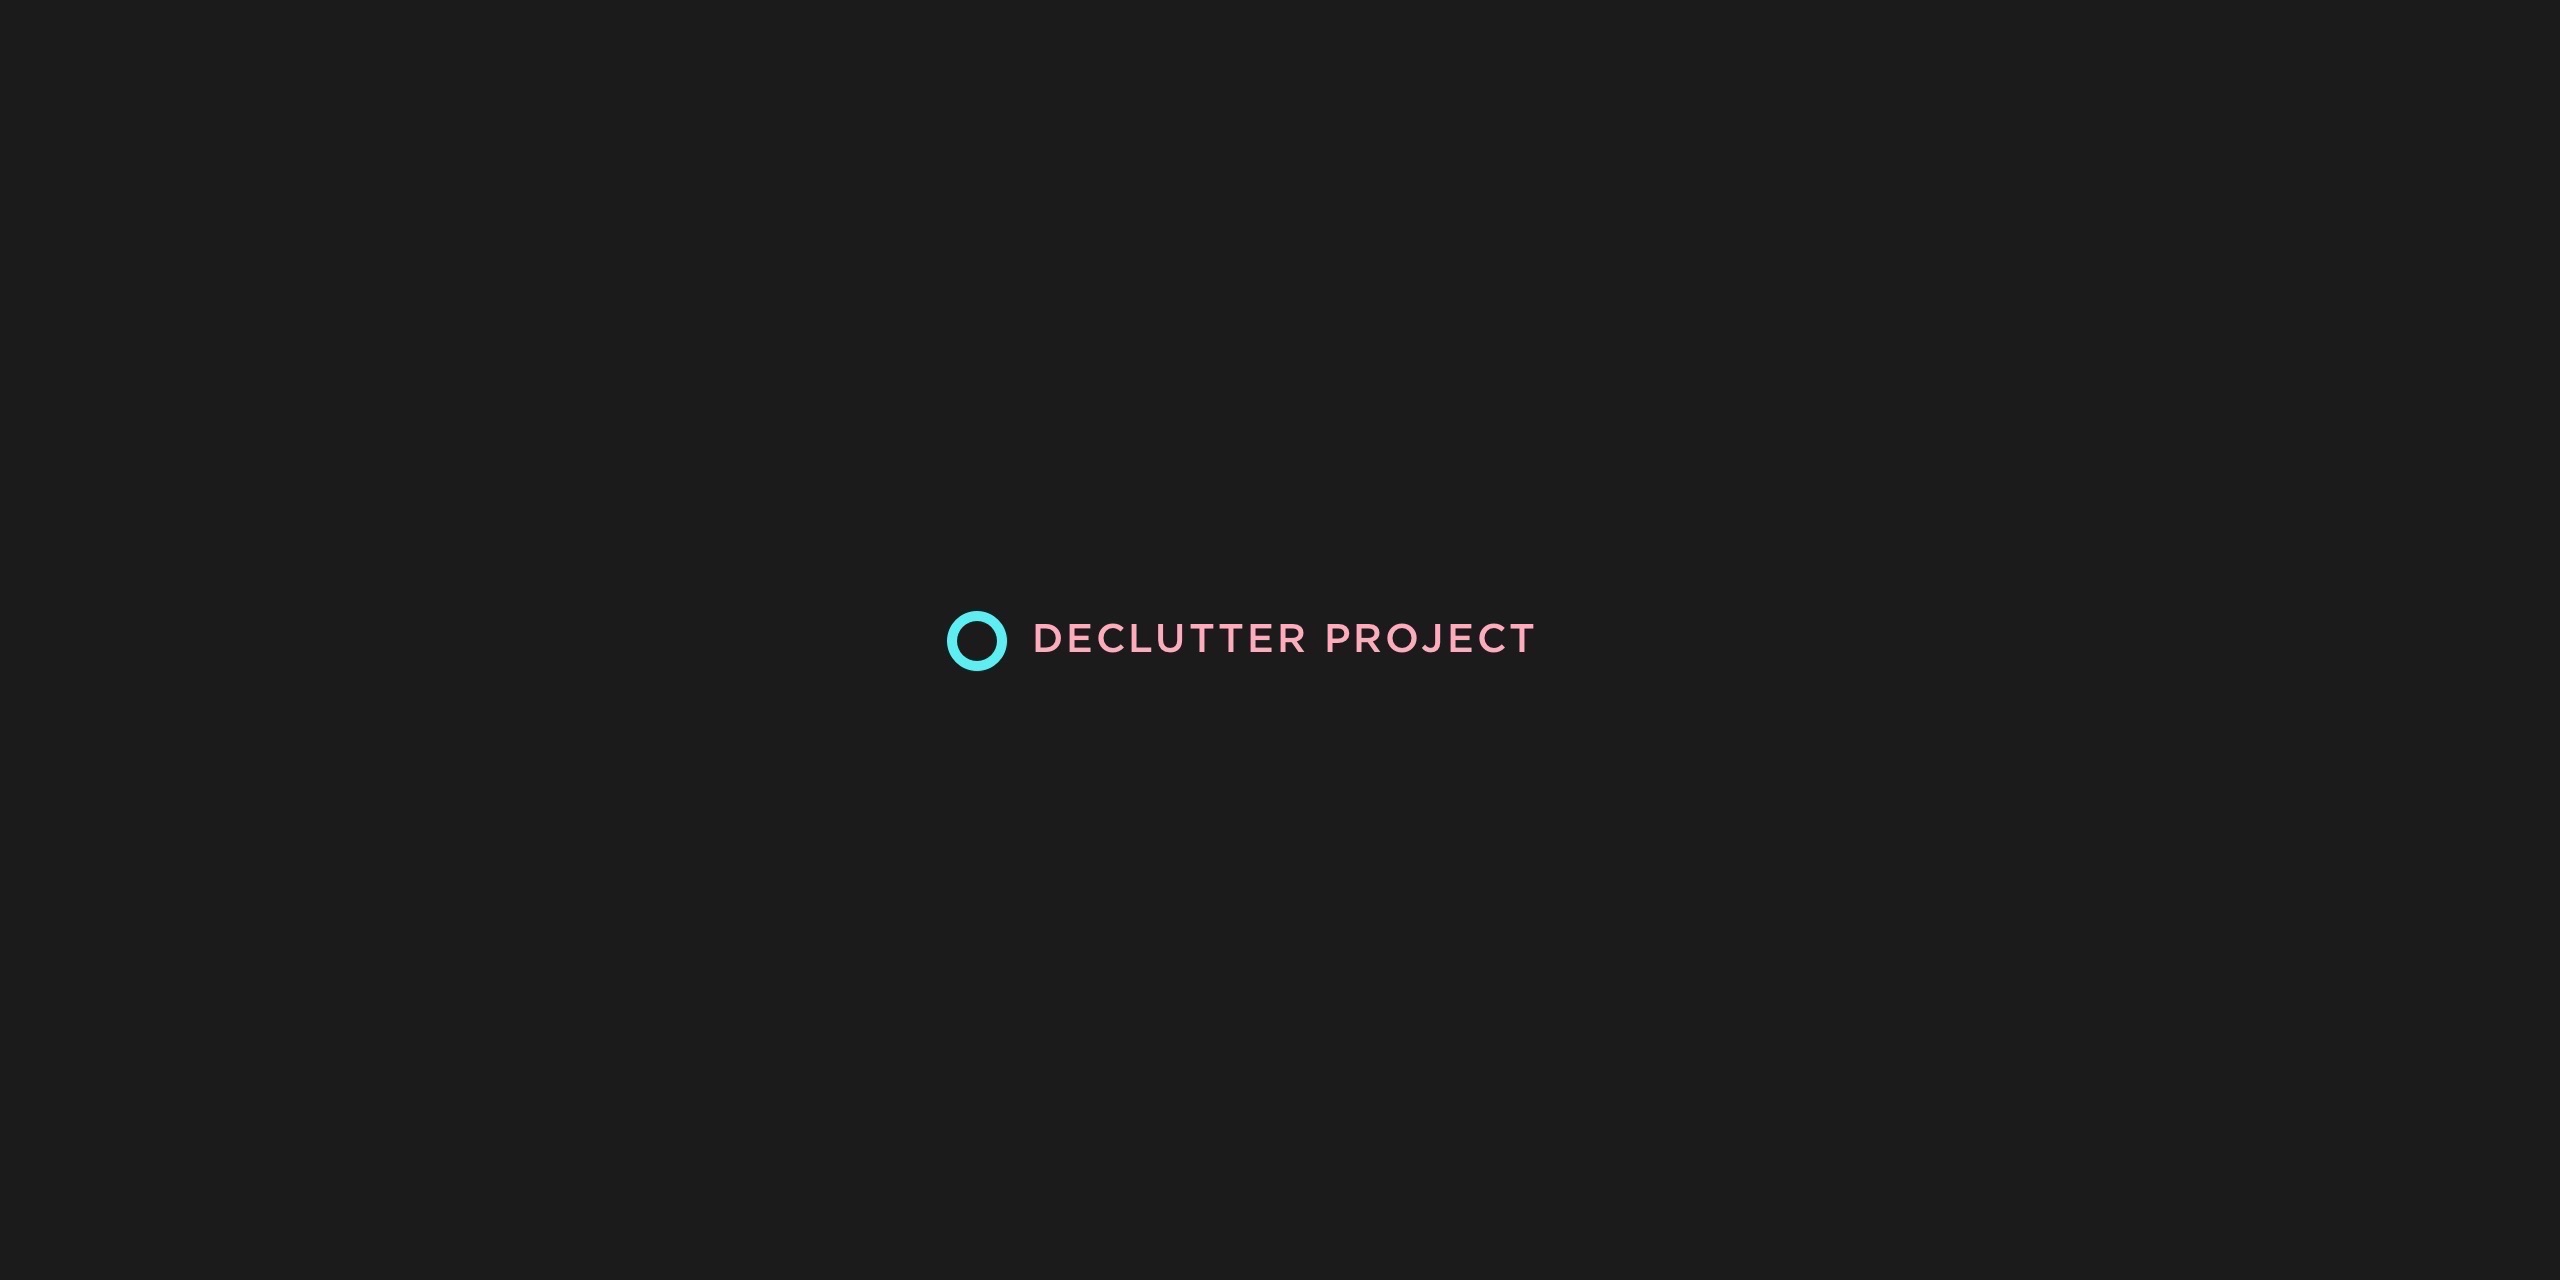 Announcing the De-clutter Project